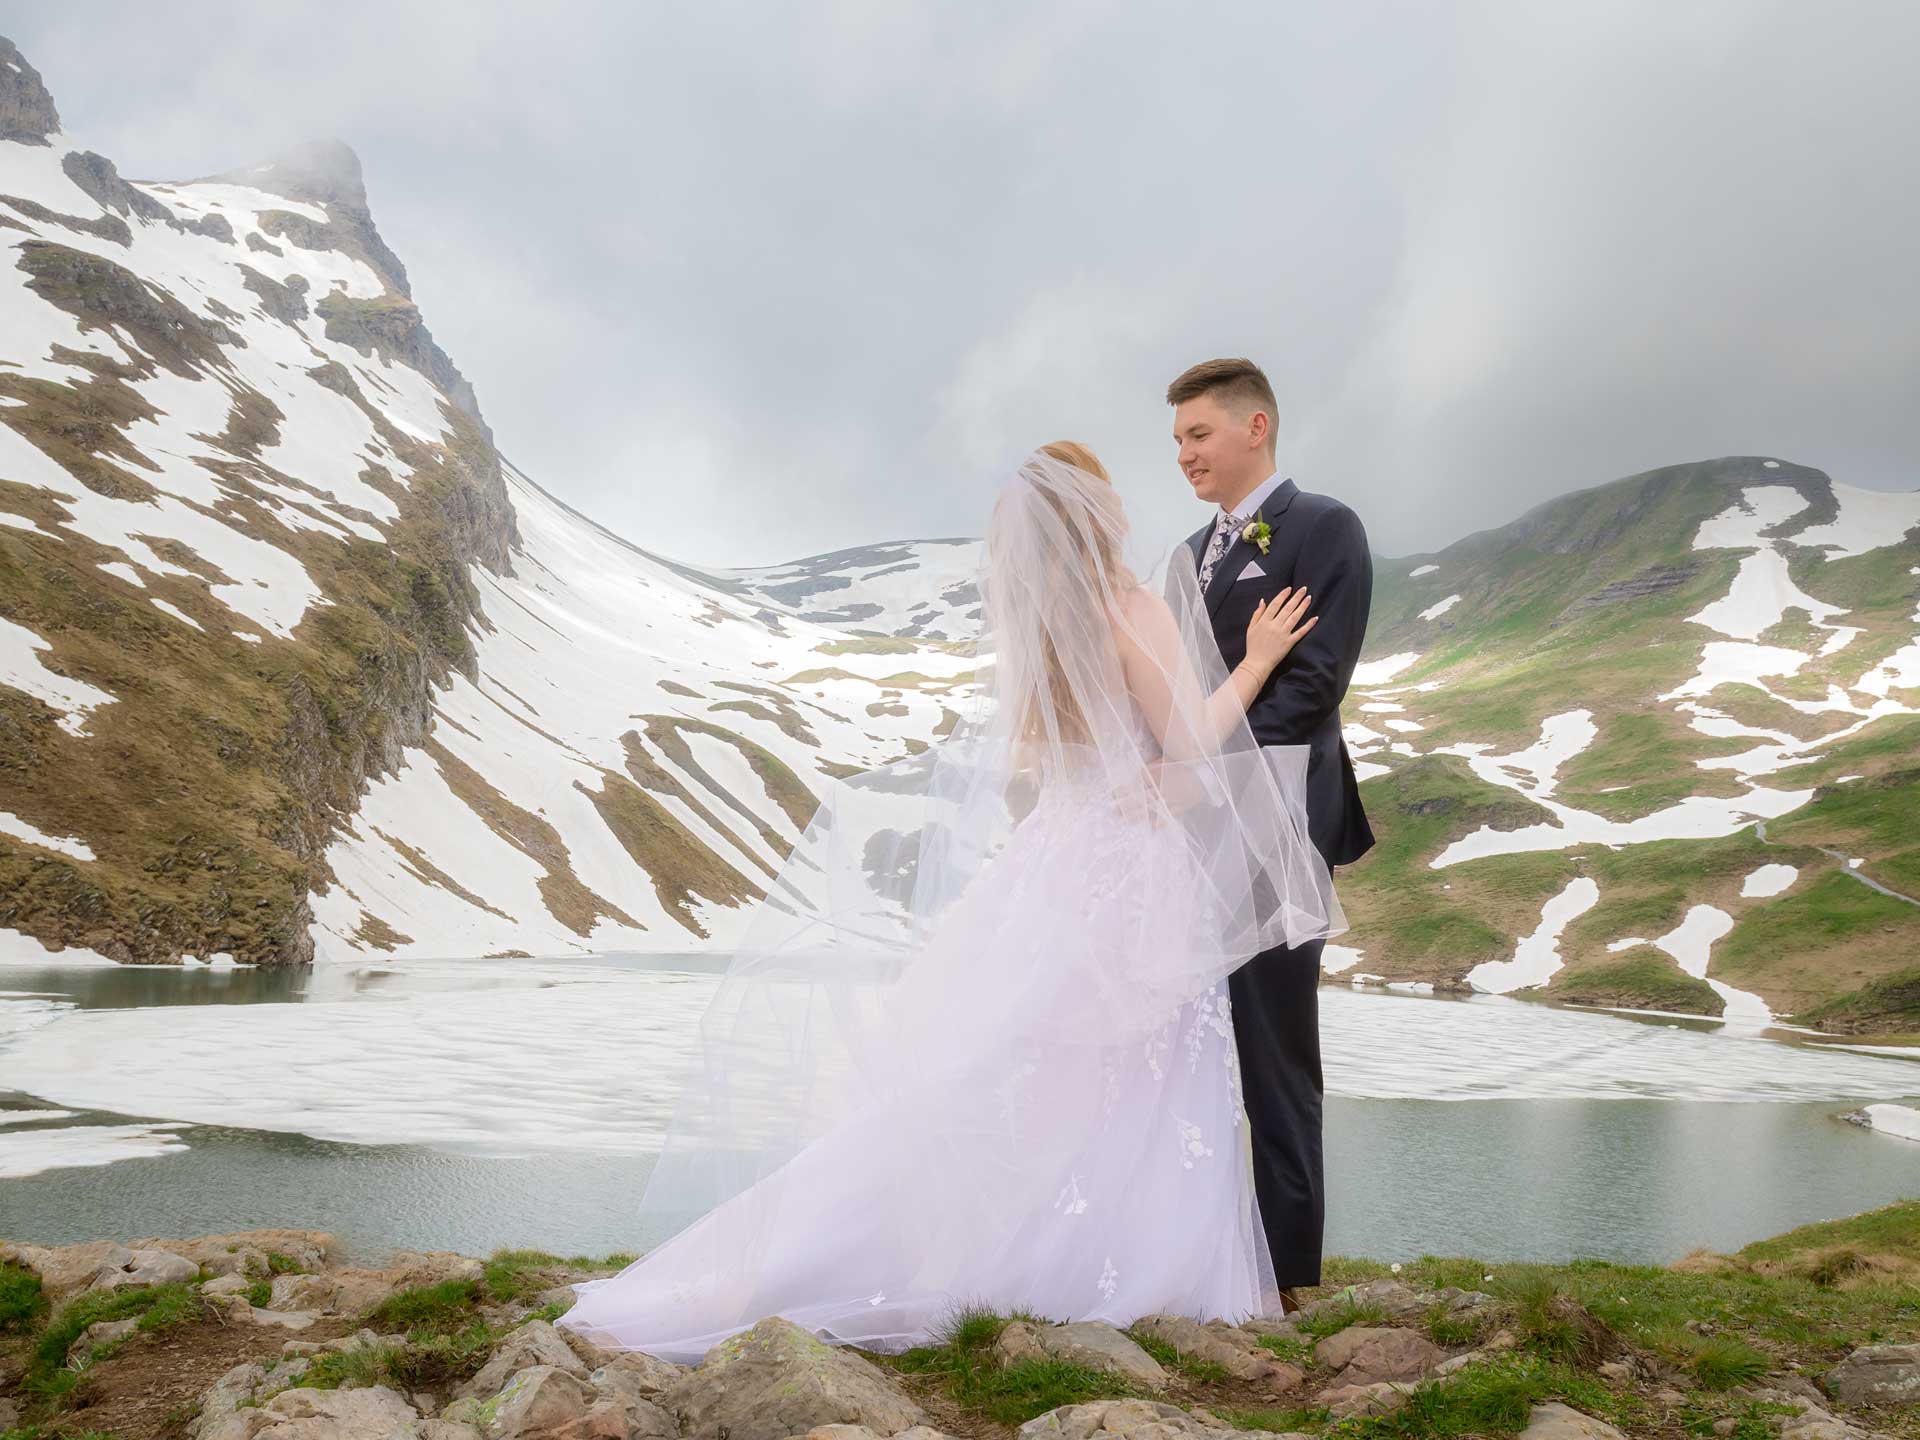 After Wedding photo shoot at Bachalspee lake